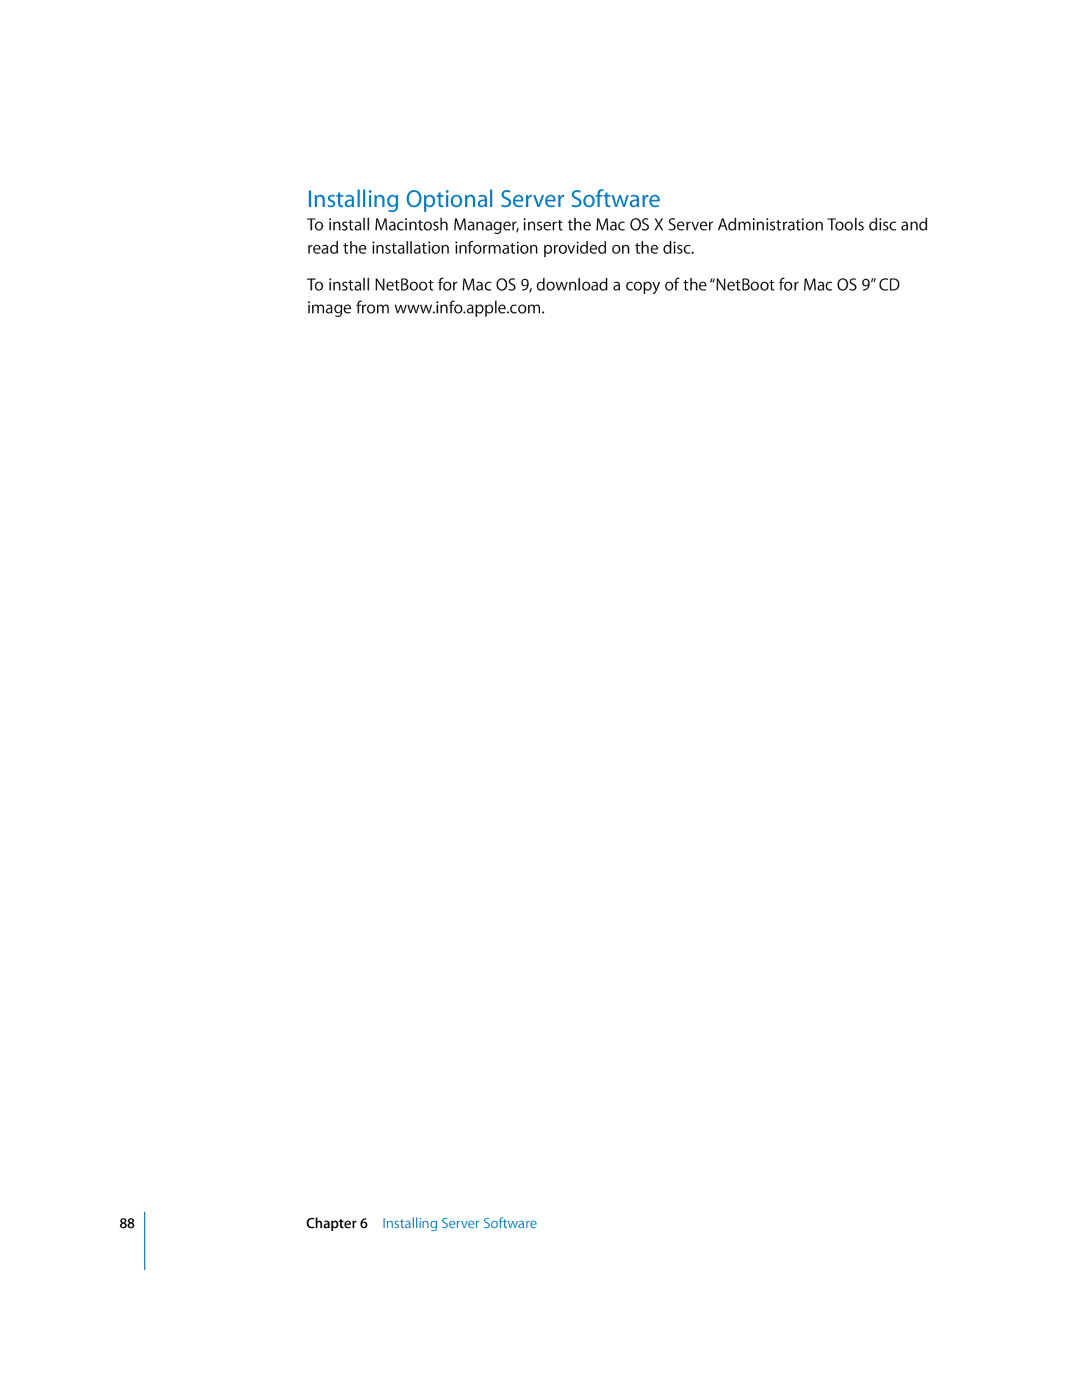 Apple 10.3 manual Installing Optional Server Software 